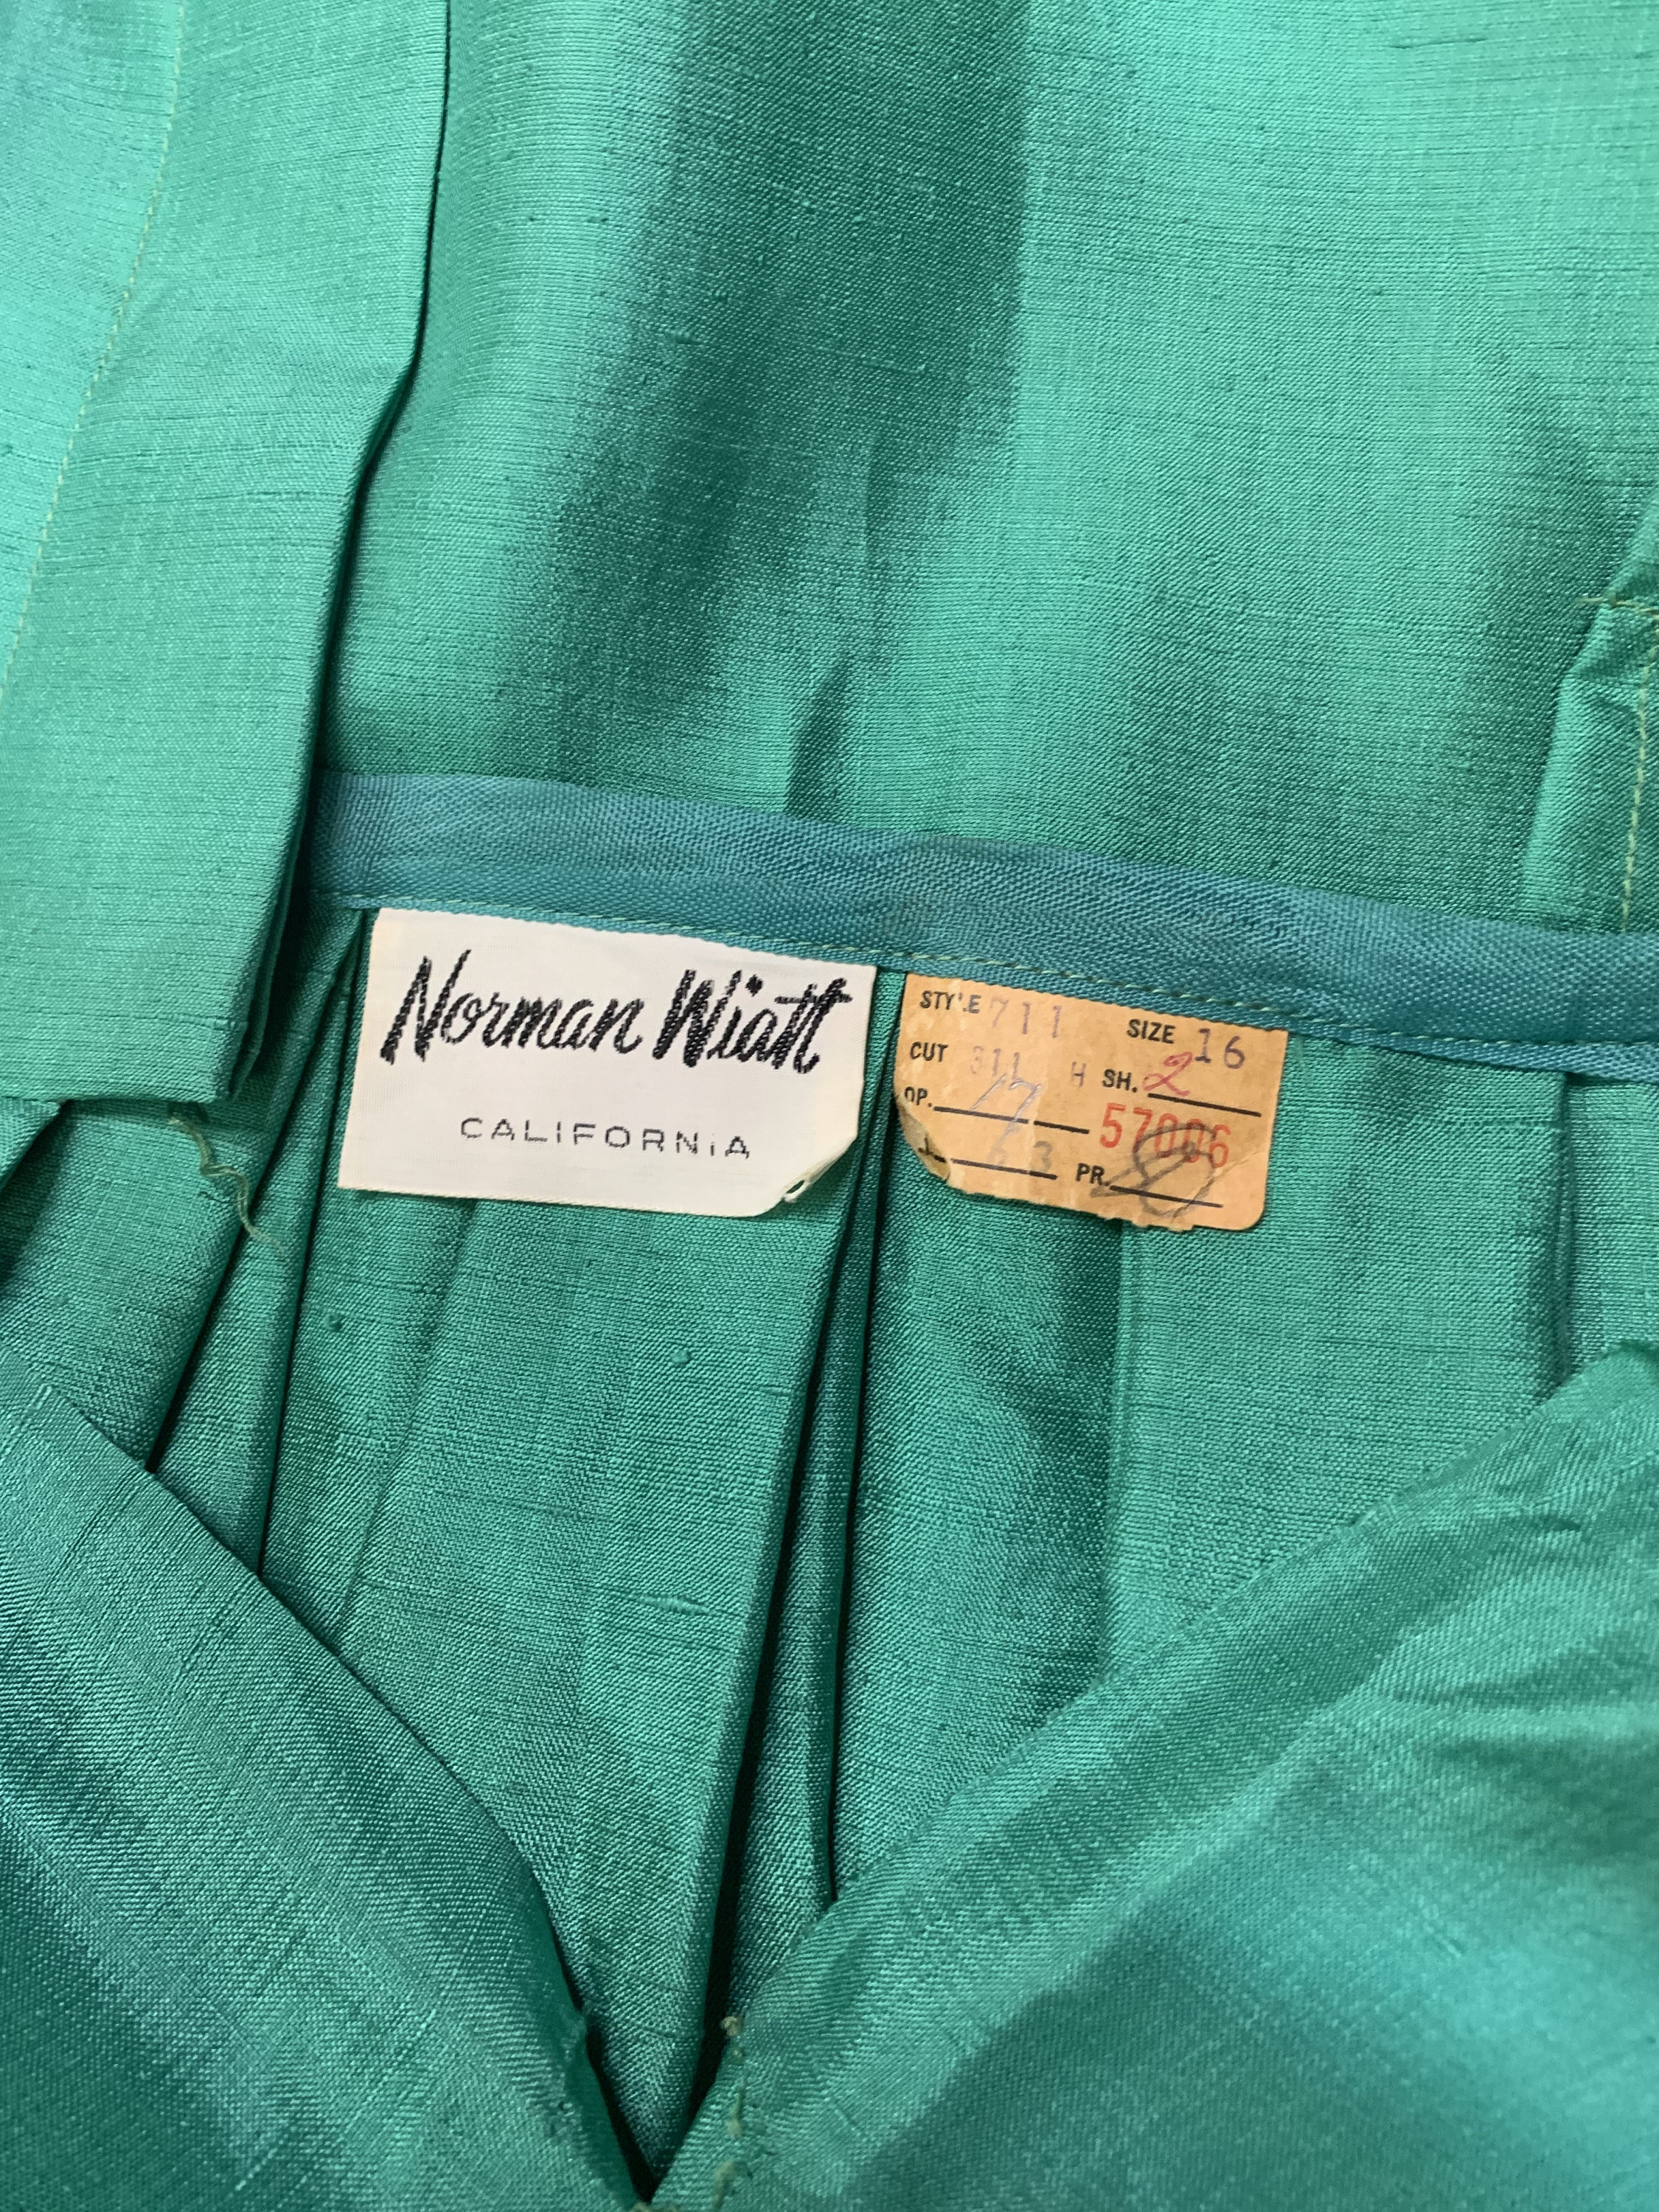 Vintage 1950s Green Shirt Dress by Norman Wiatt - Etsy